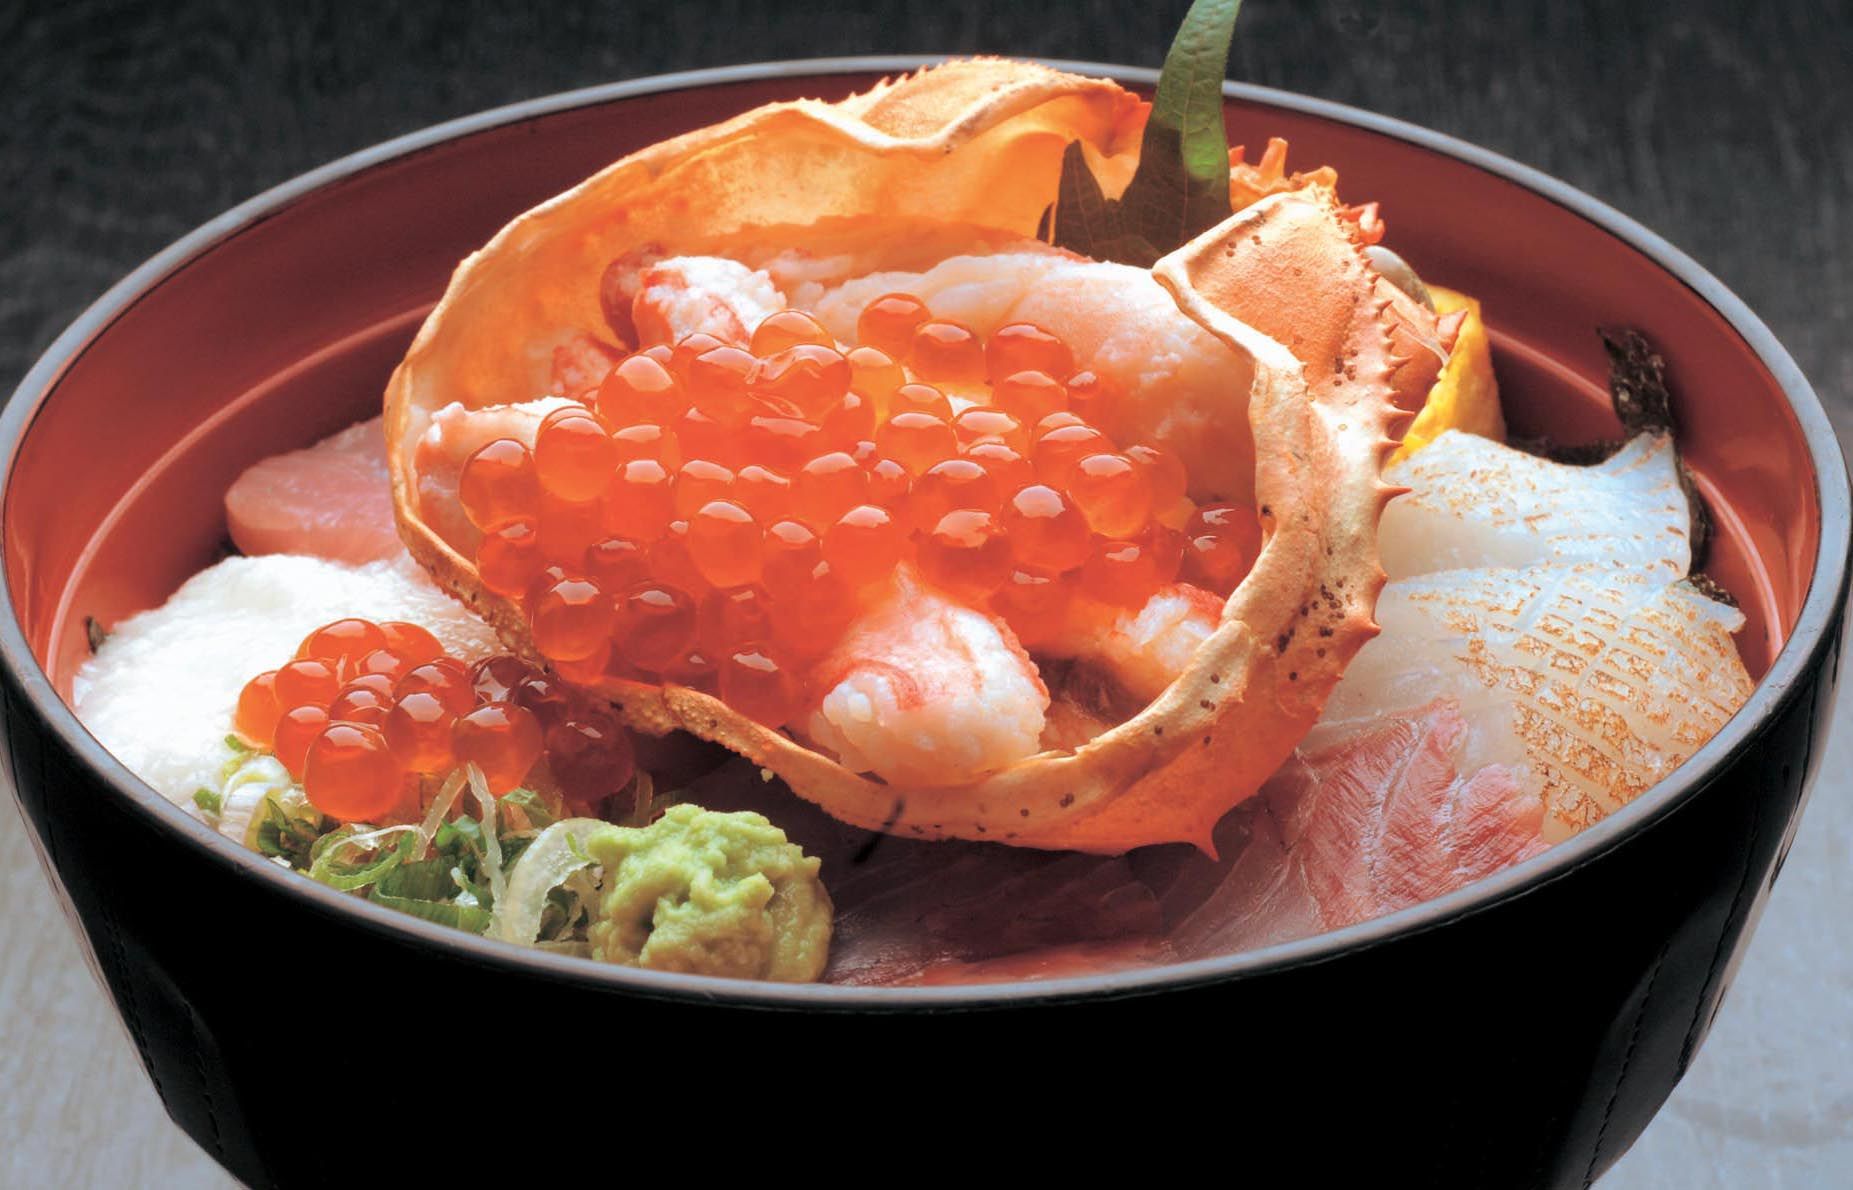 El famoso restaurante de mercado Karoko sirve mariscos frescos a precios razonables. El generoso Special Seafood Bowl a 2180 yenes es popular.